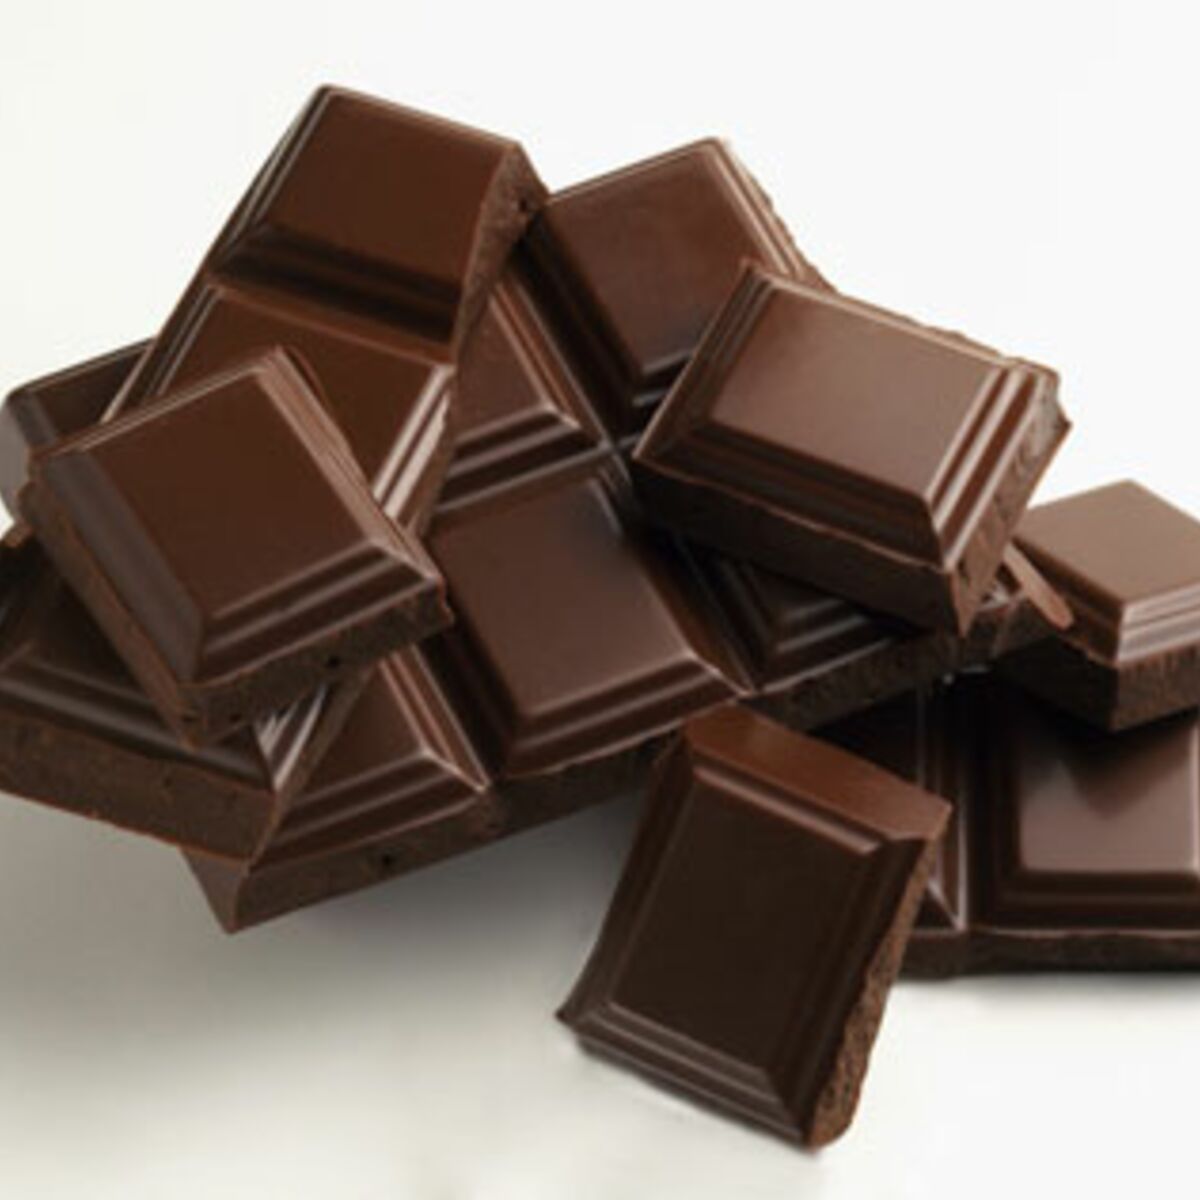 Quel chocolat est bon pour la santé ?